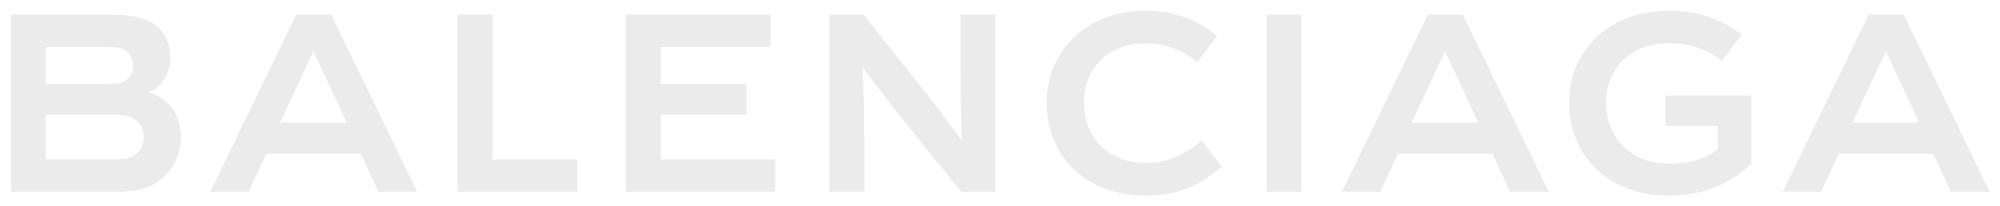 Balenciaga logo SVG  PNG Download  Free SVG Download